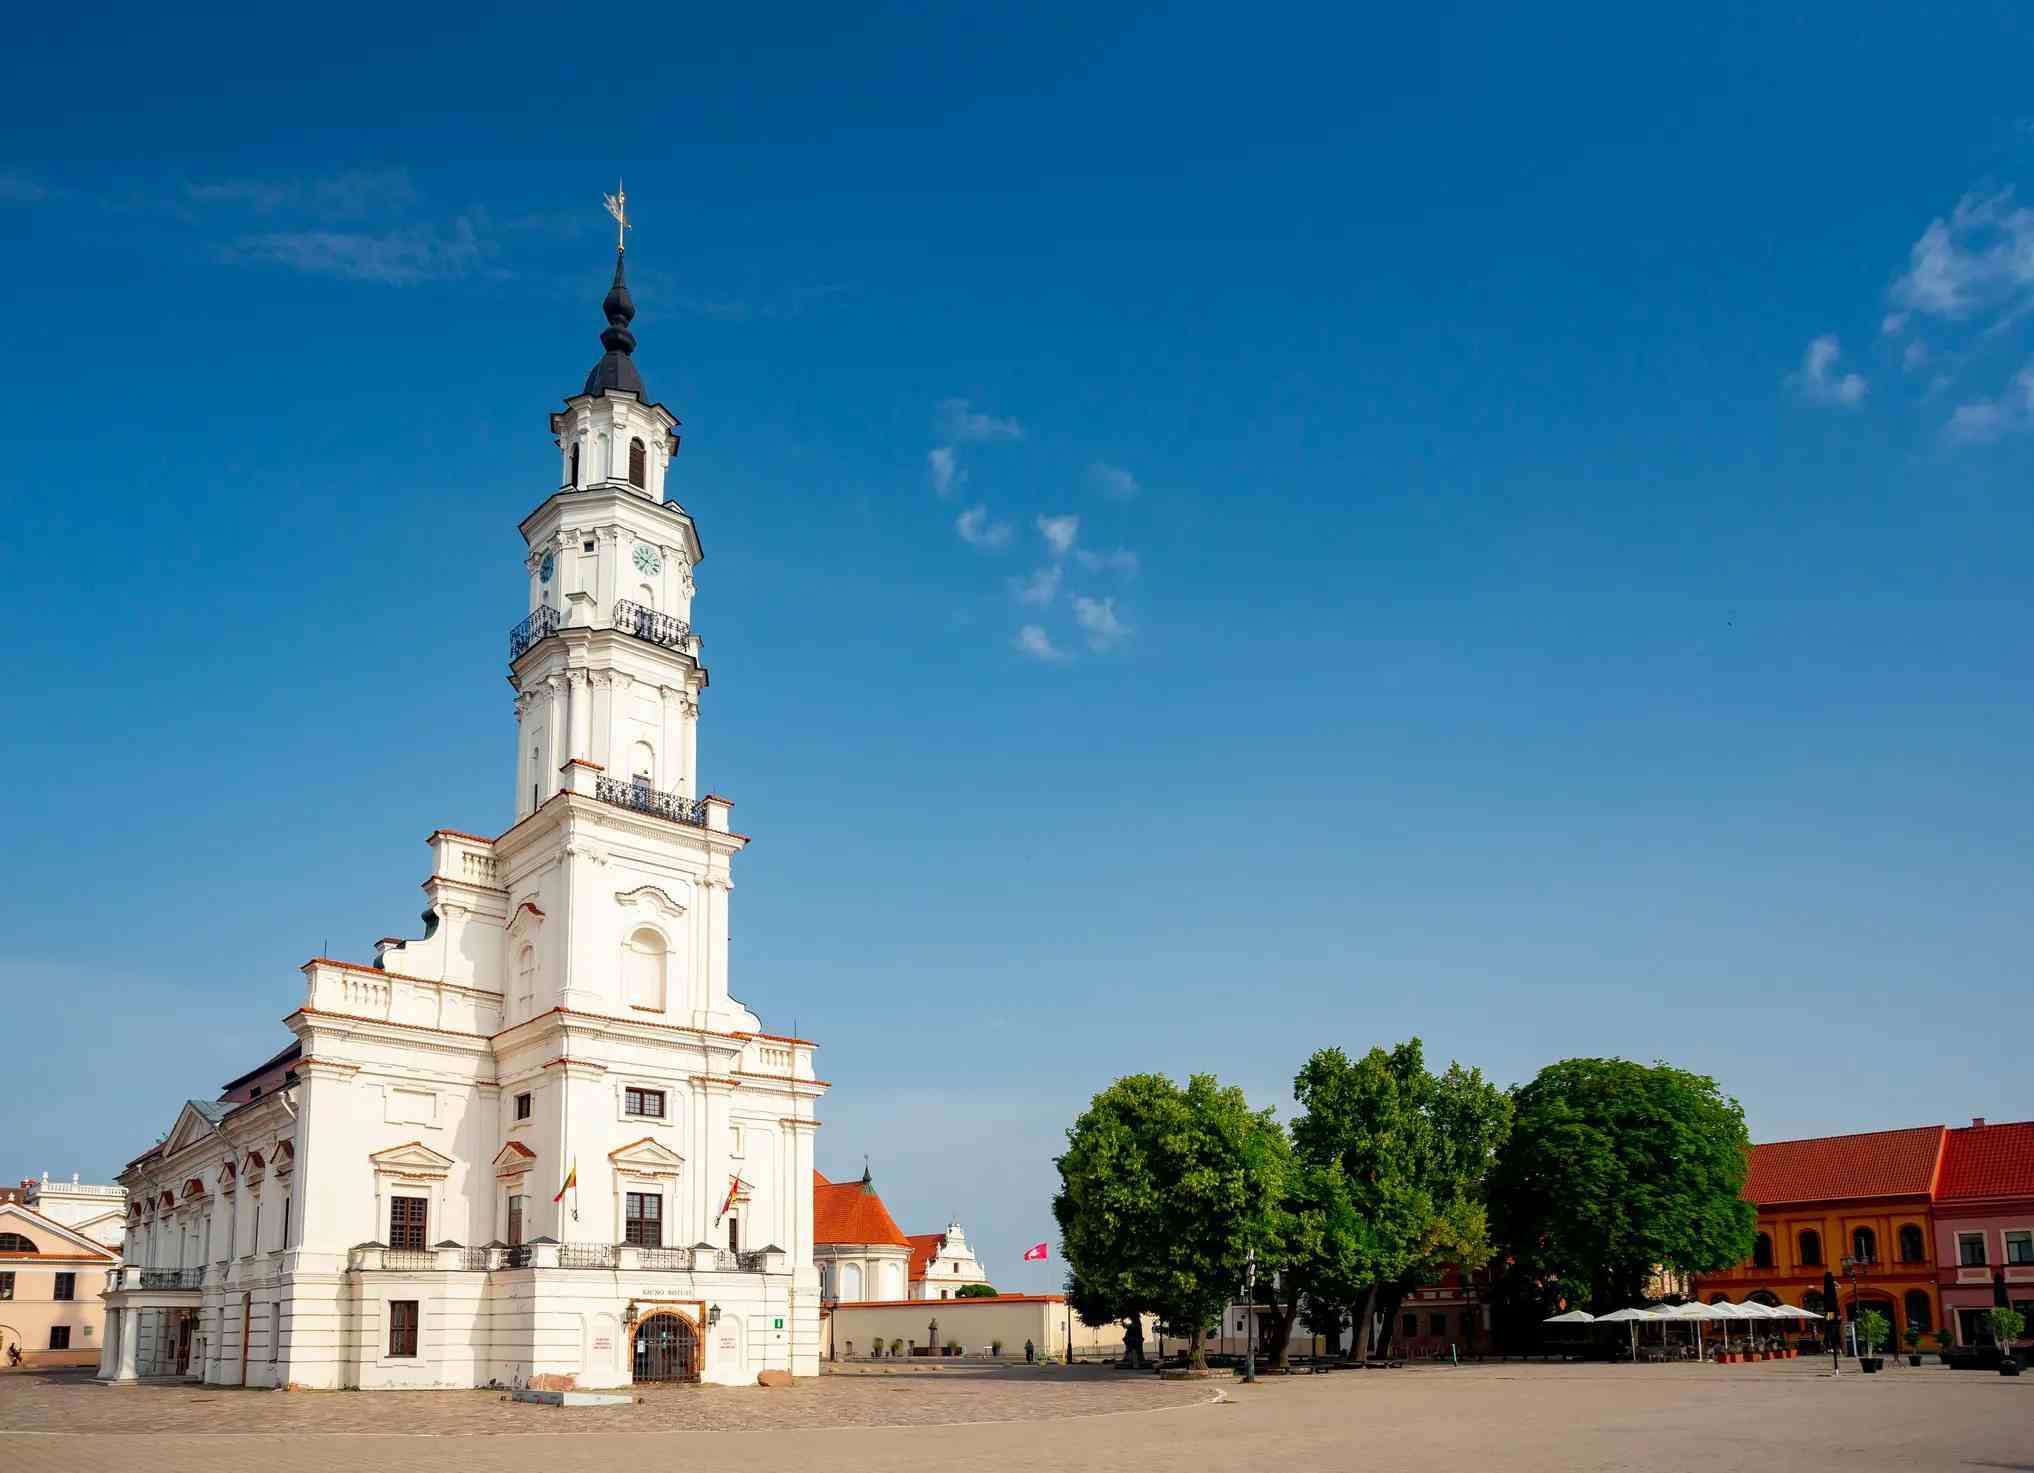 Kaunas Town Hall image